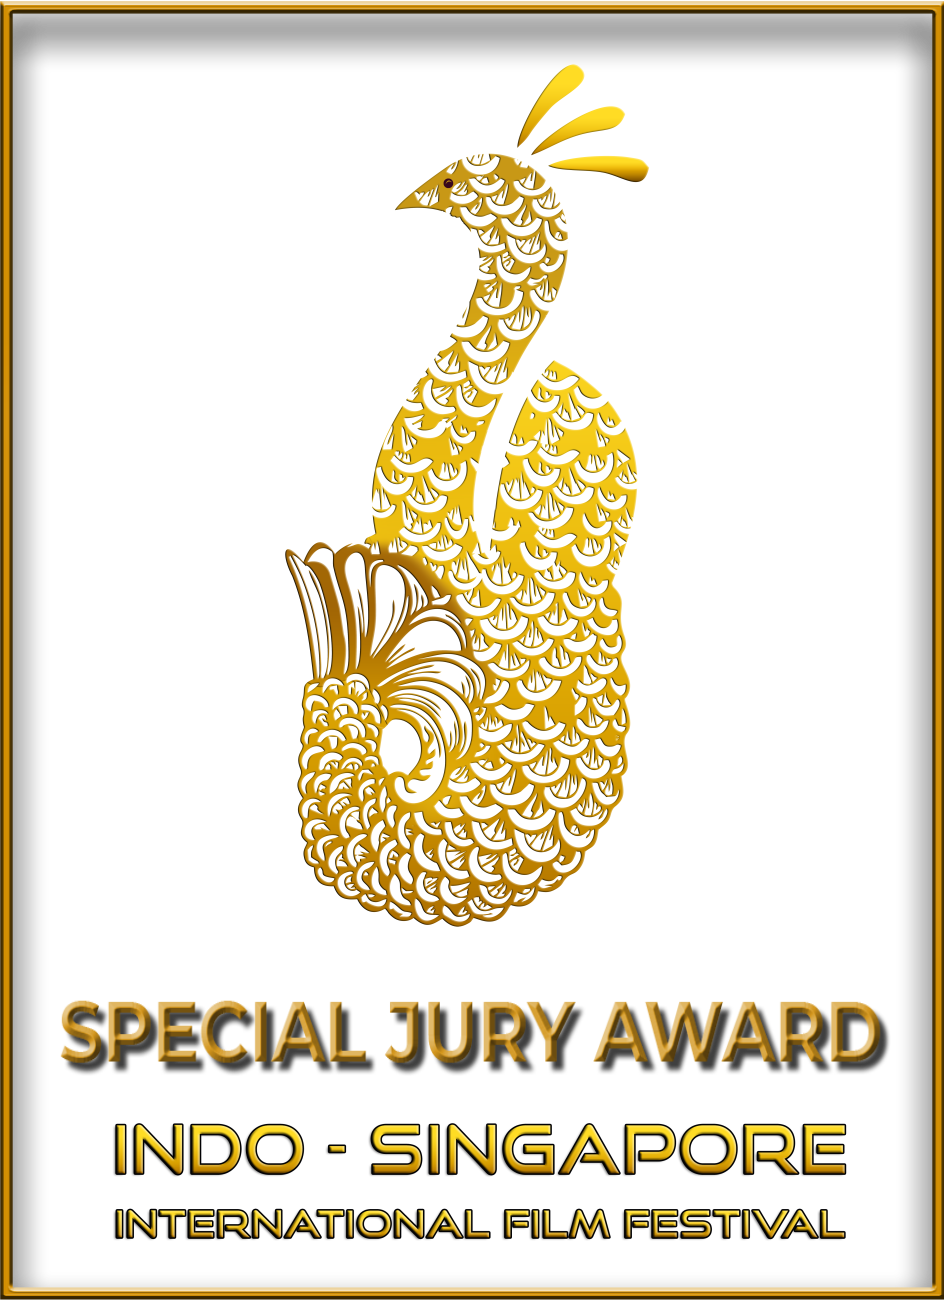 SPECIAL JURY AWARD